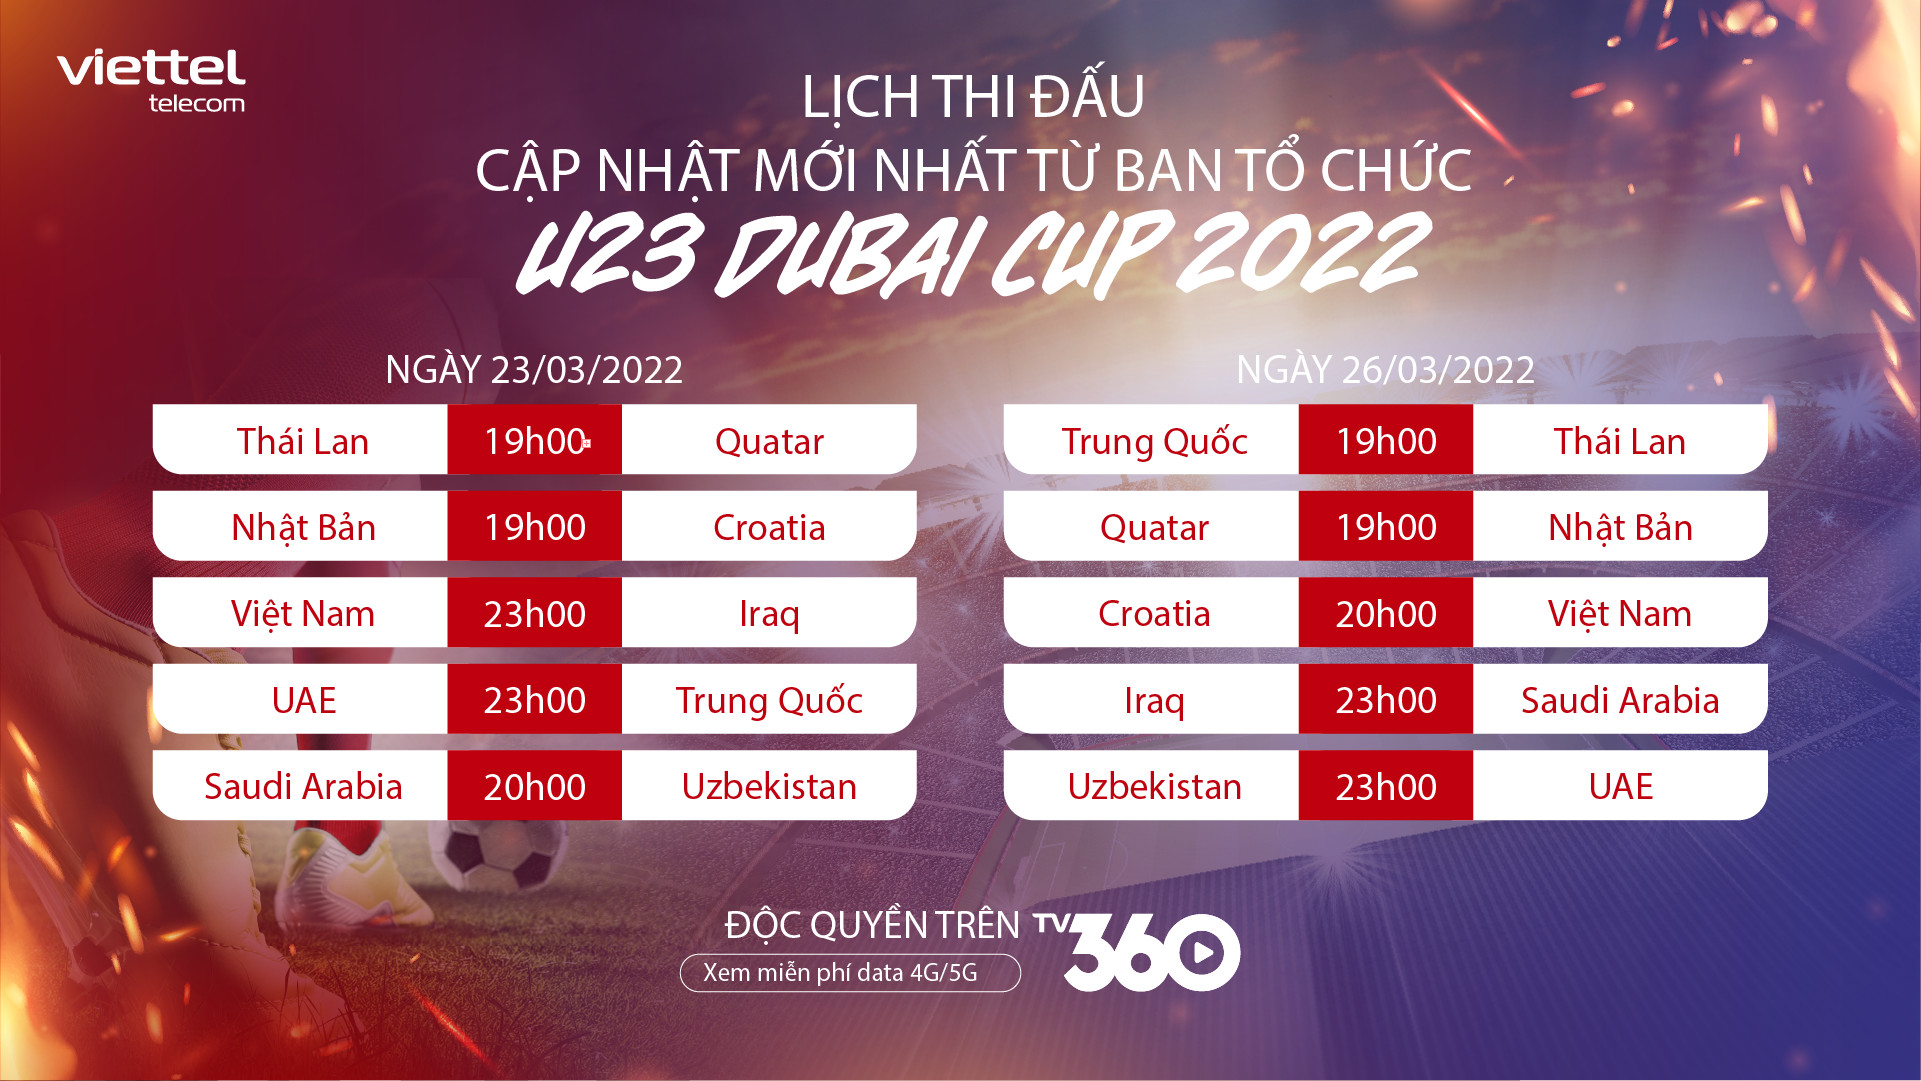 Viettel đã có bản quyền truyền hình U23 Dubai Cup, khán giả có thể chọn bình luận viên xem U23 Việt Nam - Ảnh 2.